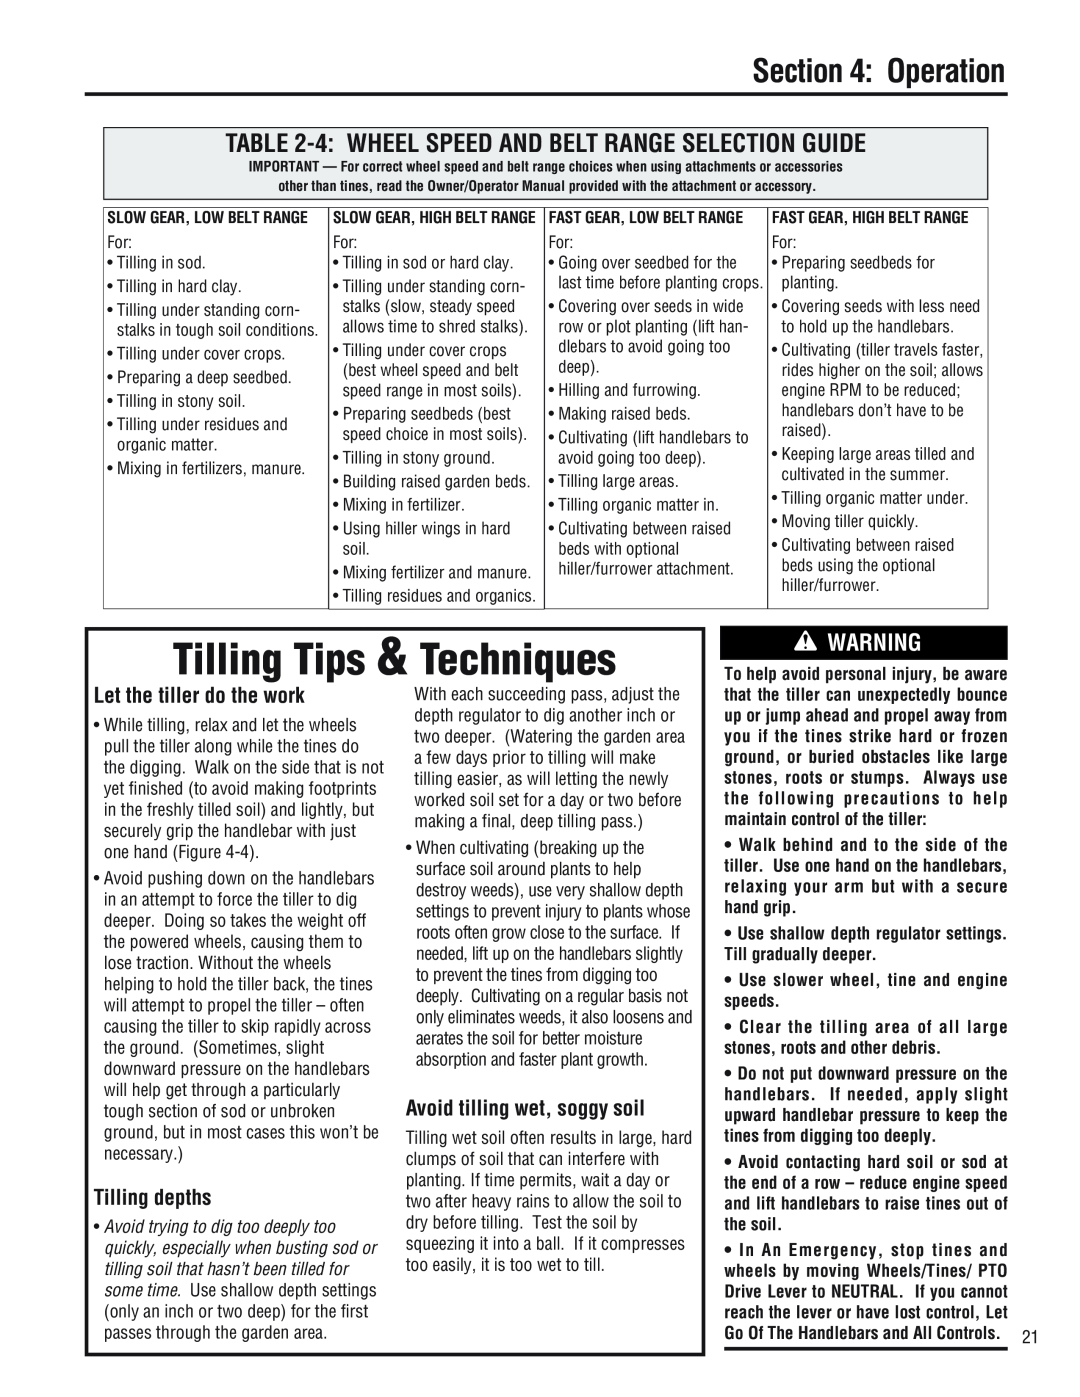 Troy-Bilt 682J, E686N Tilling Tips & Techniques, 4 WHEEL SPEED AND BELT RANGE SELECTION GUIDE, Let the tiller do the work 